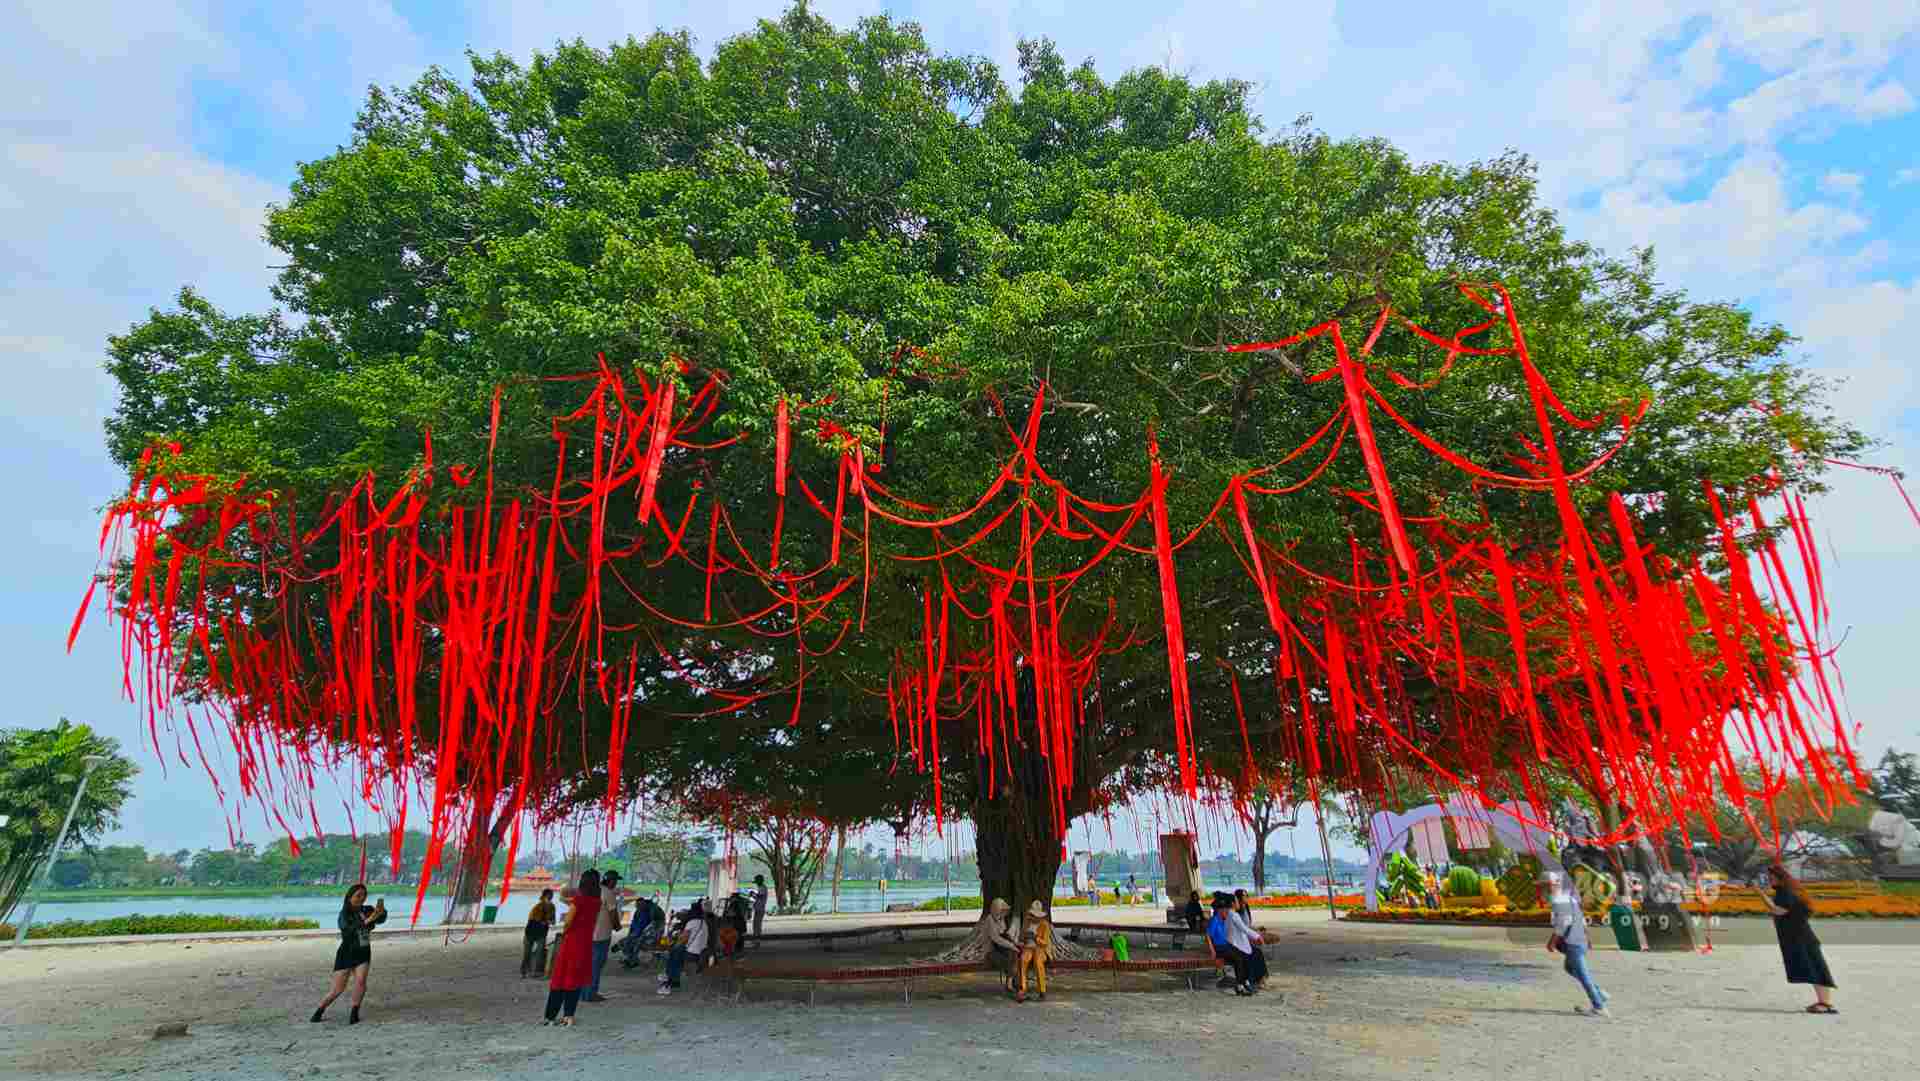 Ghi nhận của Lao Động, hằng ngày, dưới bóng cây sanh cổ thụ nơi quảng trường Quốc học Huế có rất đông người dân và du khách cùng nhau chụp hình hoặc nghỉ ngơi hóng mát, đặc biệt vào những ngày nắng nóng. 